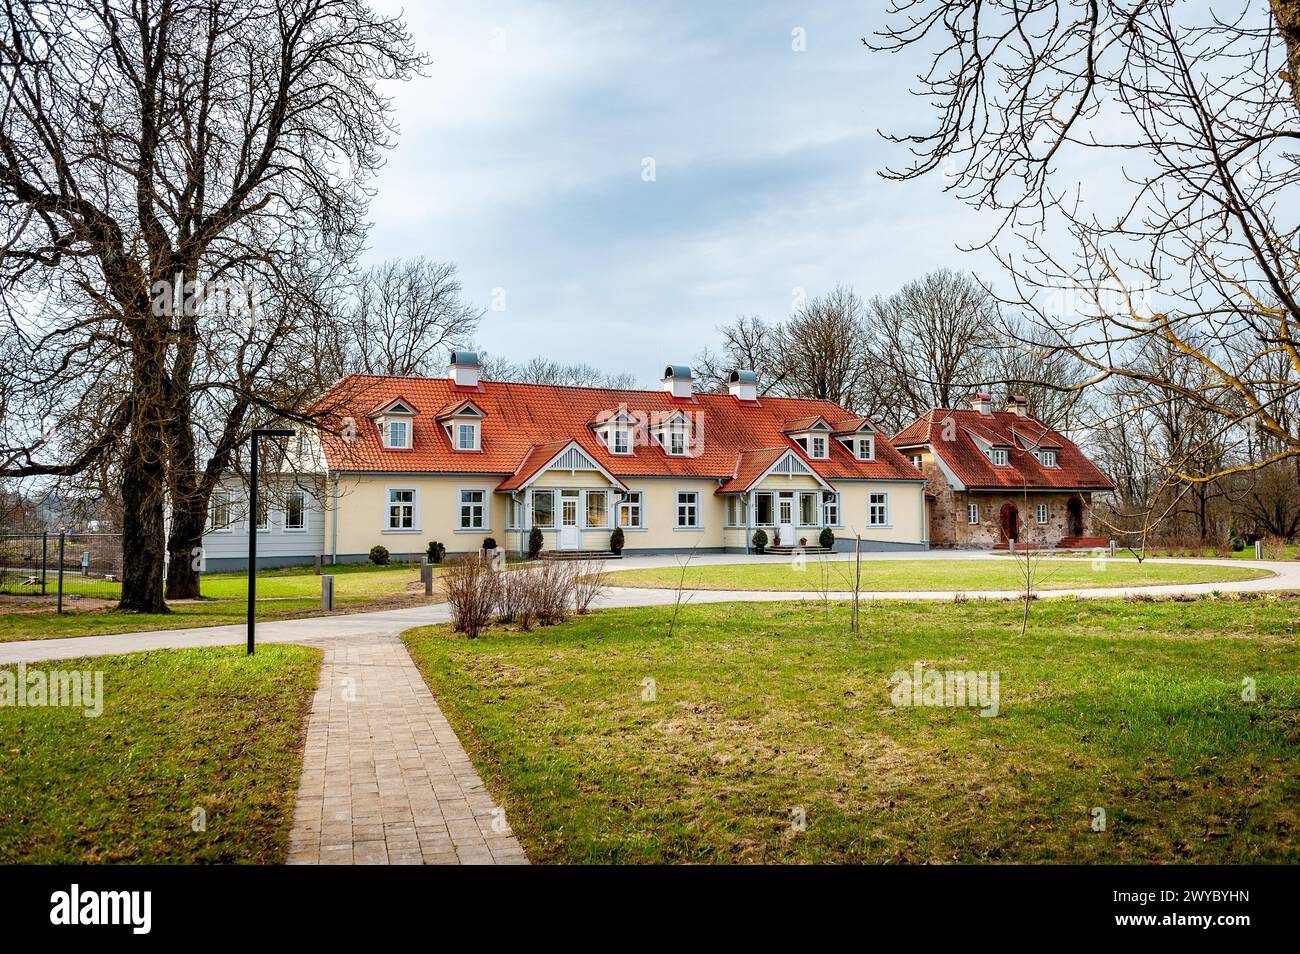 Berkenes Manor ist eines der ältesten kleinen Herrenhäuser in Zemgale, Lettland. An einem malerischen Ort gelegen und im frühklassizistischen Stil gebaut. Stockfoto